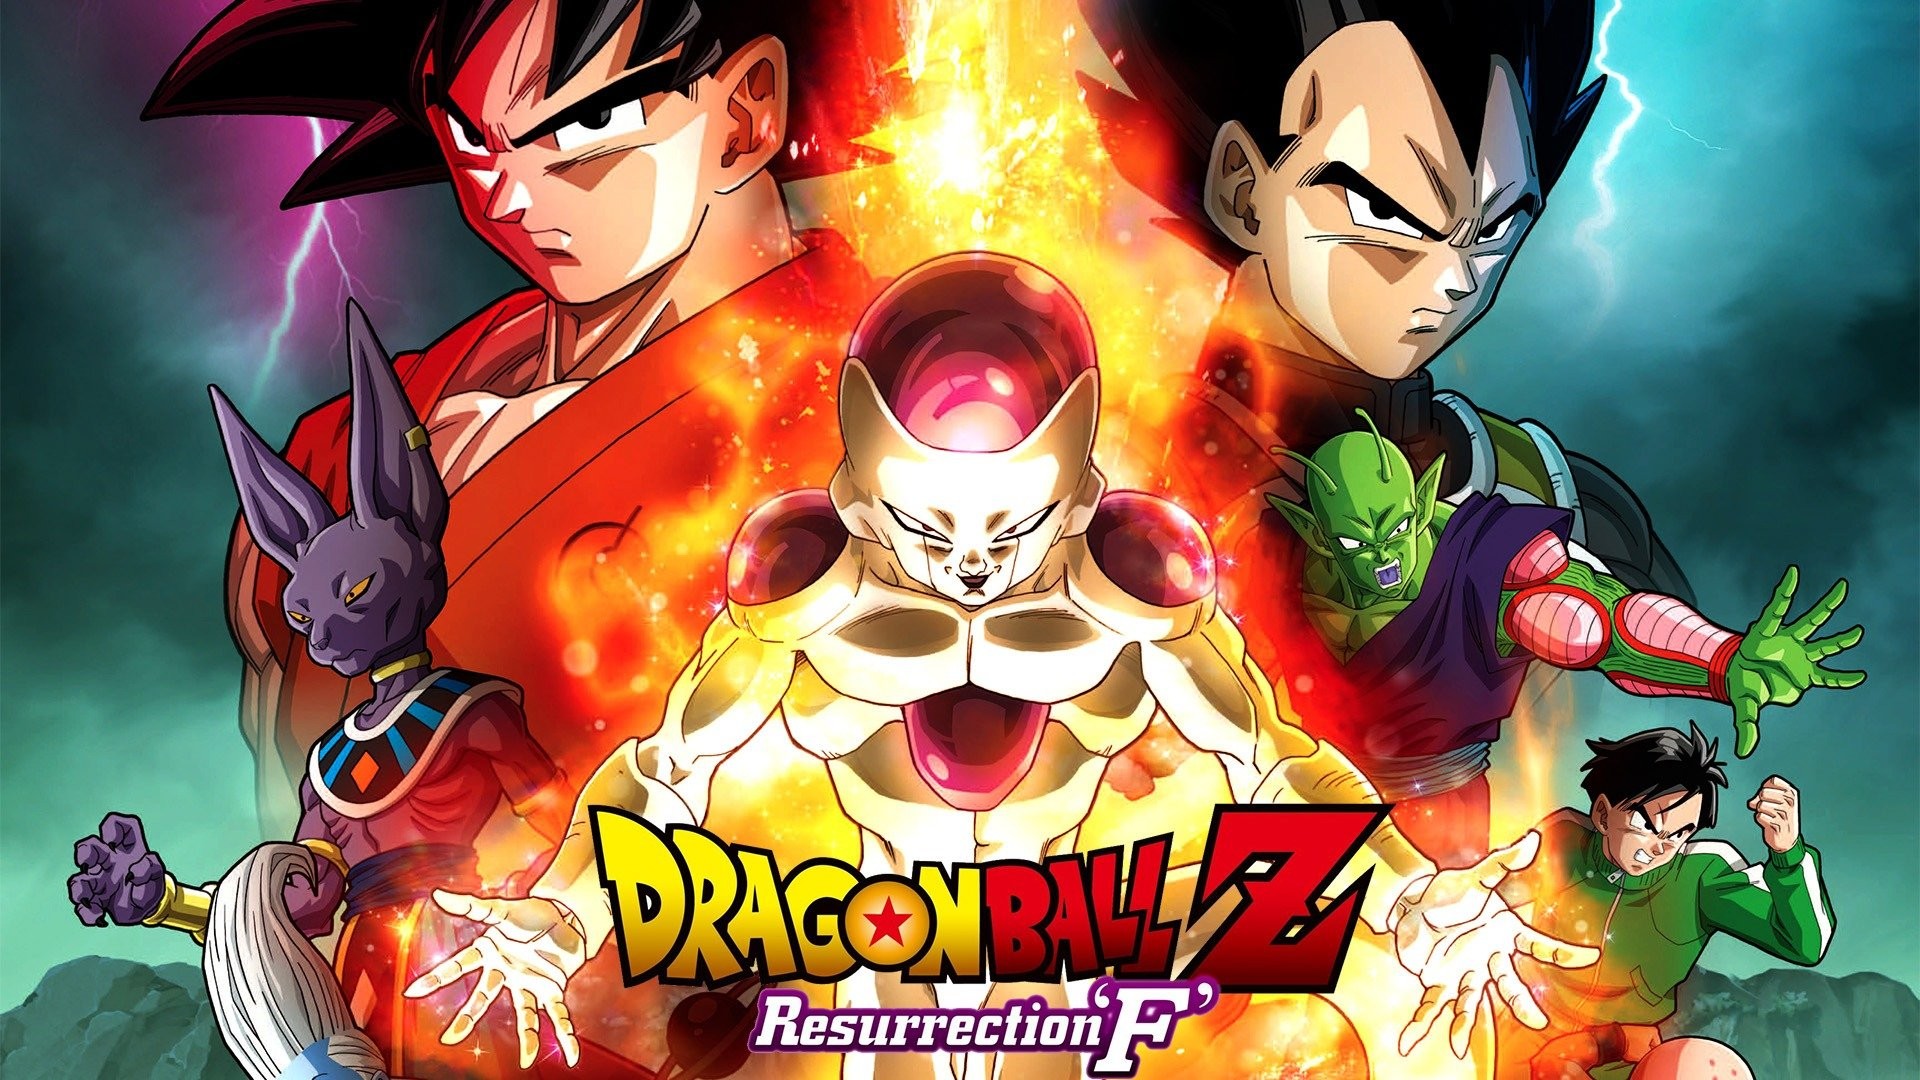 Dragon ball Z poster HD wallpaper